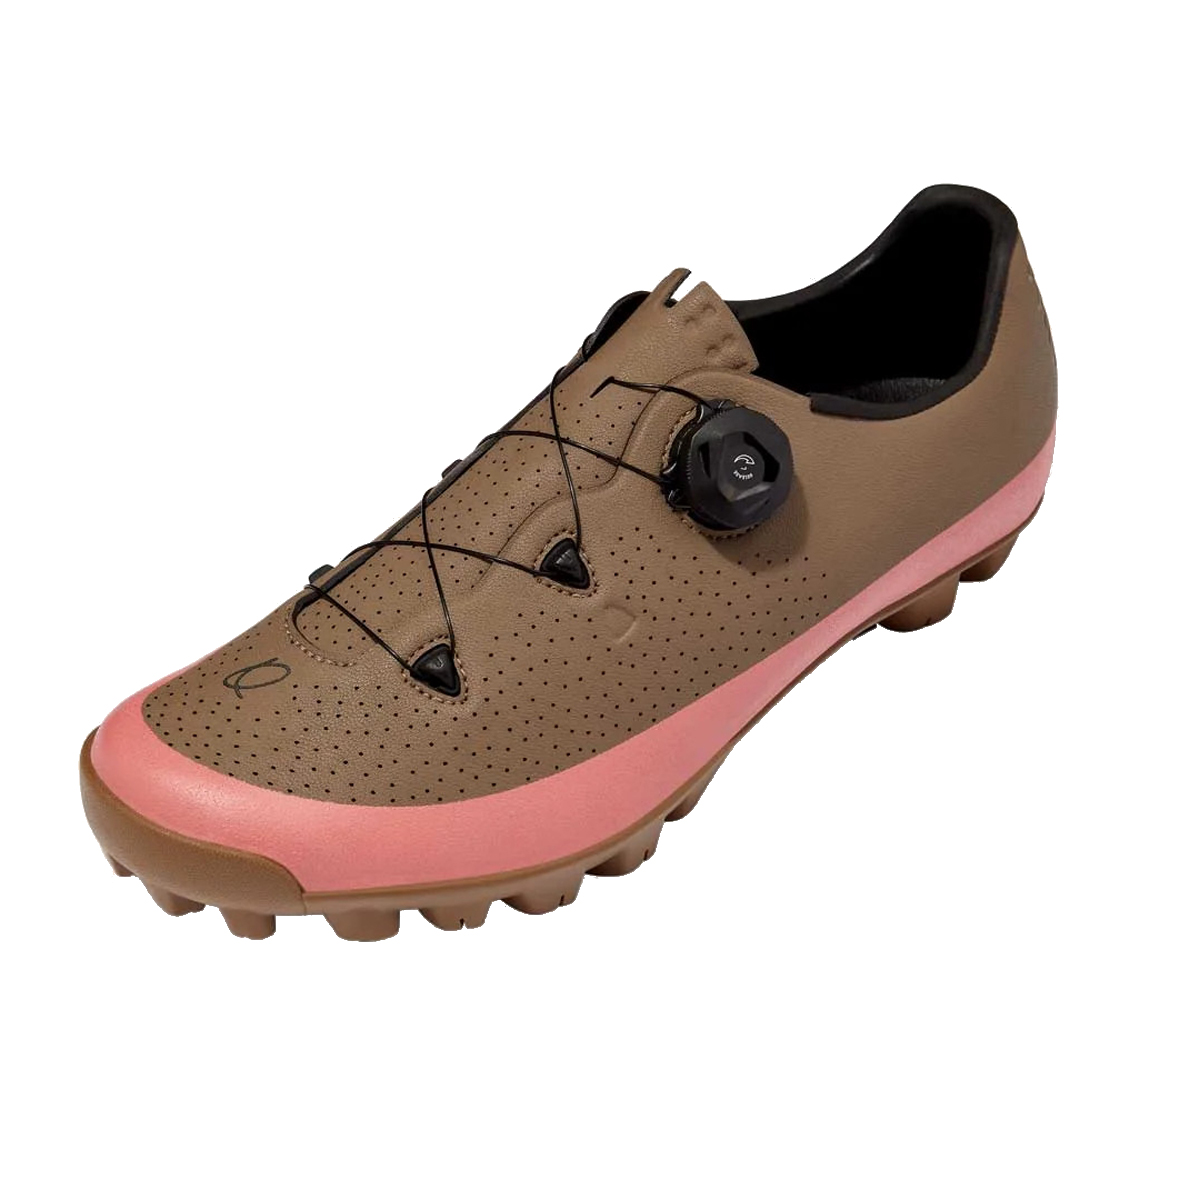 Produktbild von QUOC Gran Tourer II Gravel-Schuhe - pink